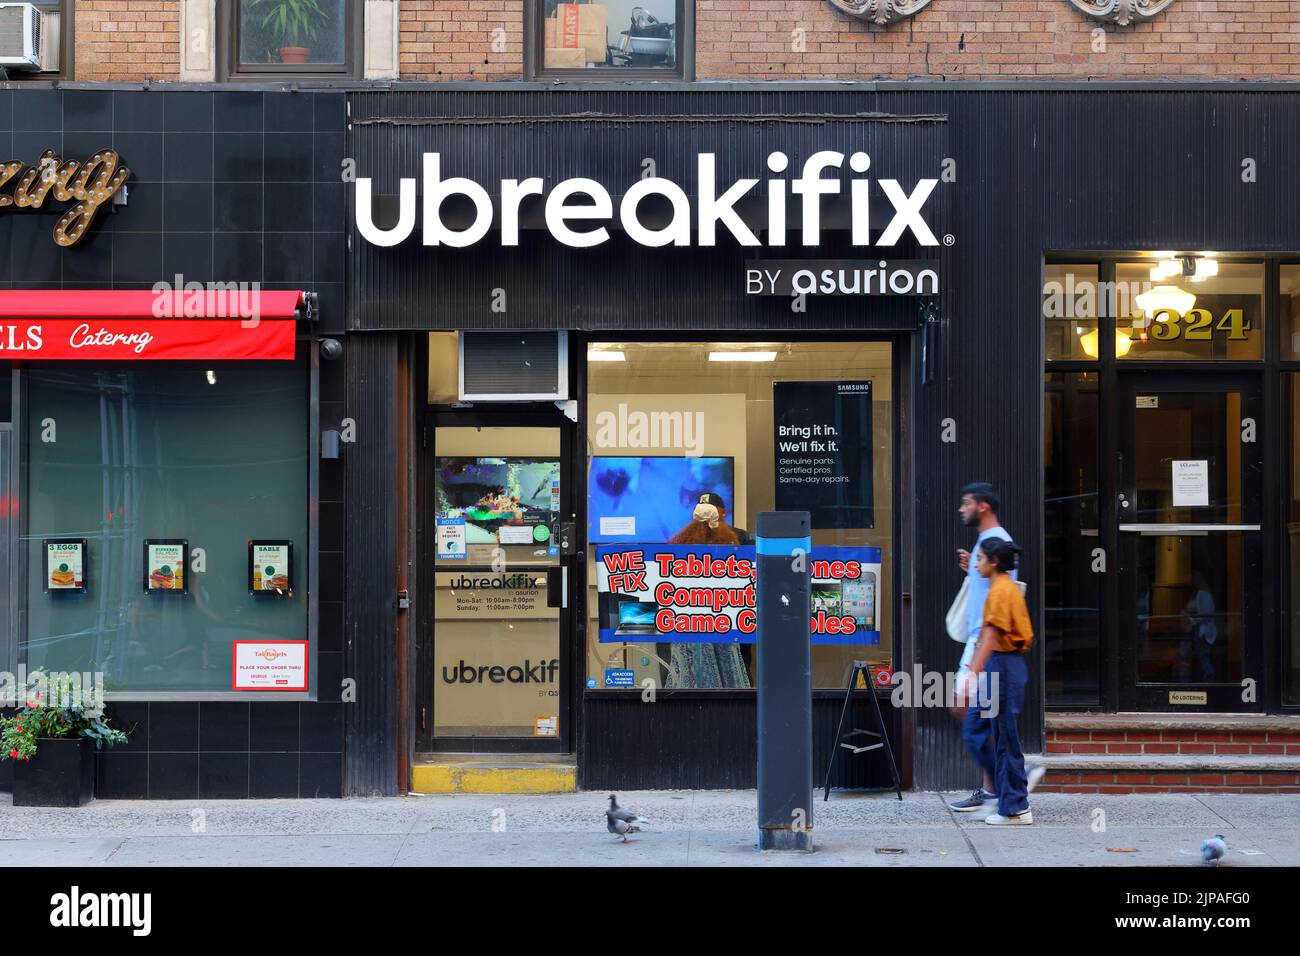 UBreakiFix par Asurion, 1324 Lexington Ave, New York, vitrine photo d'une chaîne de réparation d'ordinateur dans le Carnegie Hill Upper East Side de Manhattan Banque D'Images